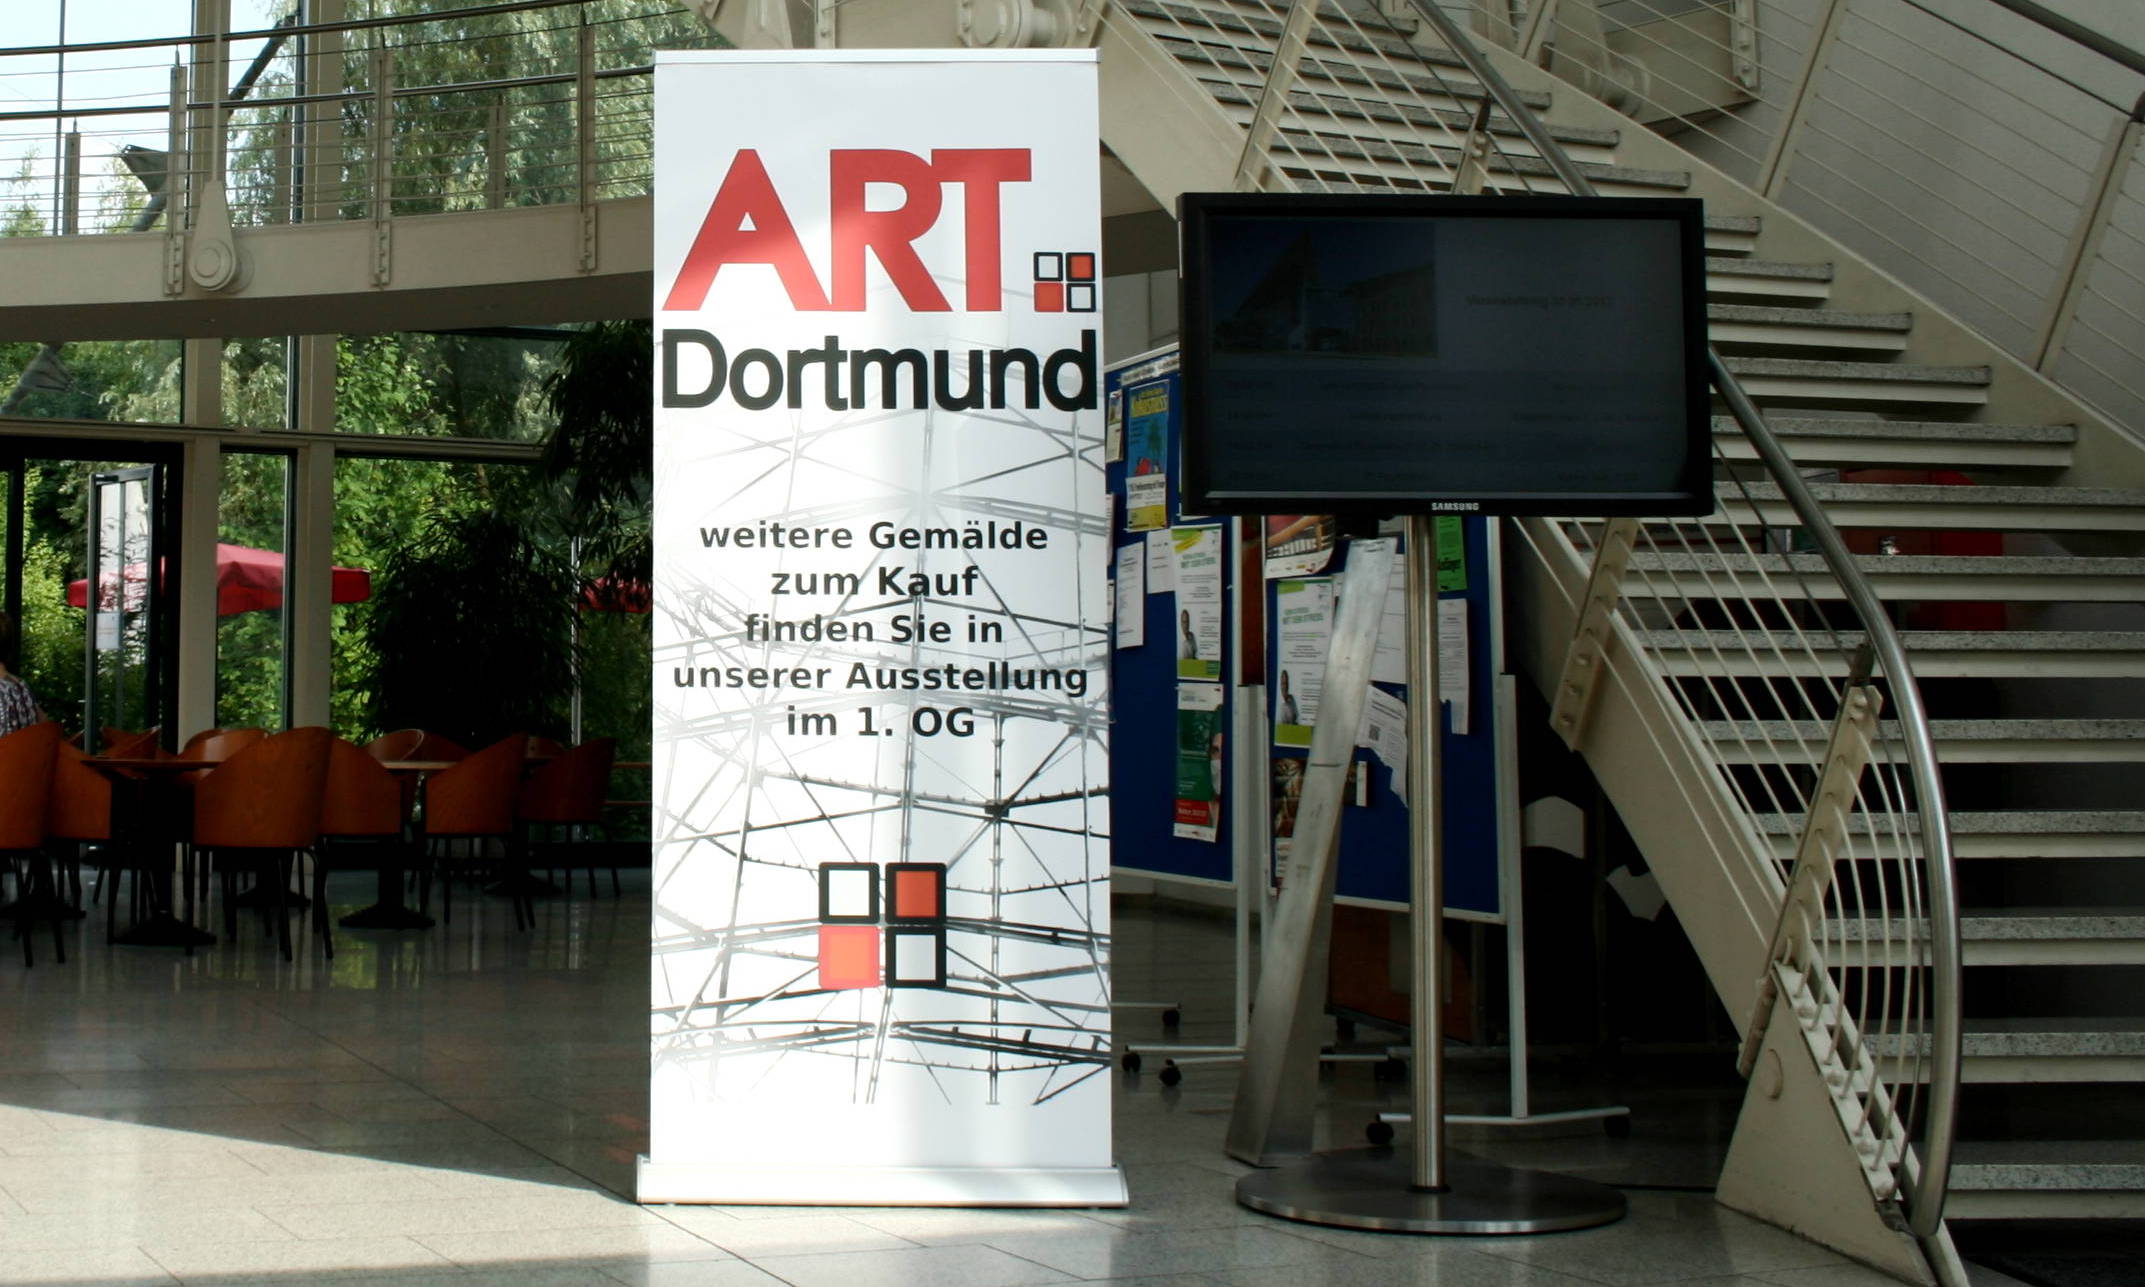 ART Dortmund in Witten